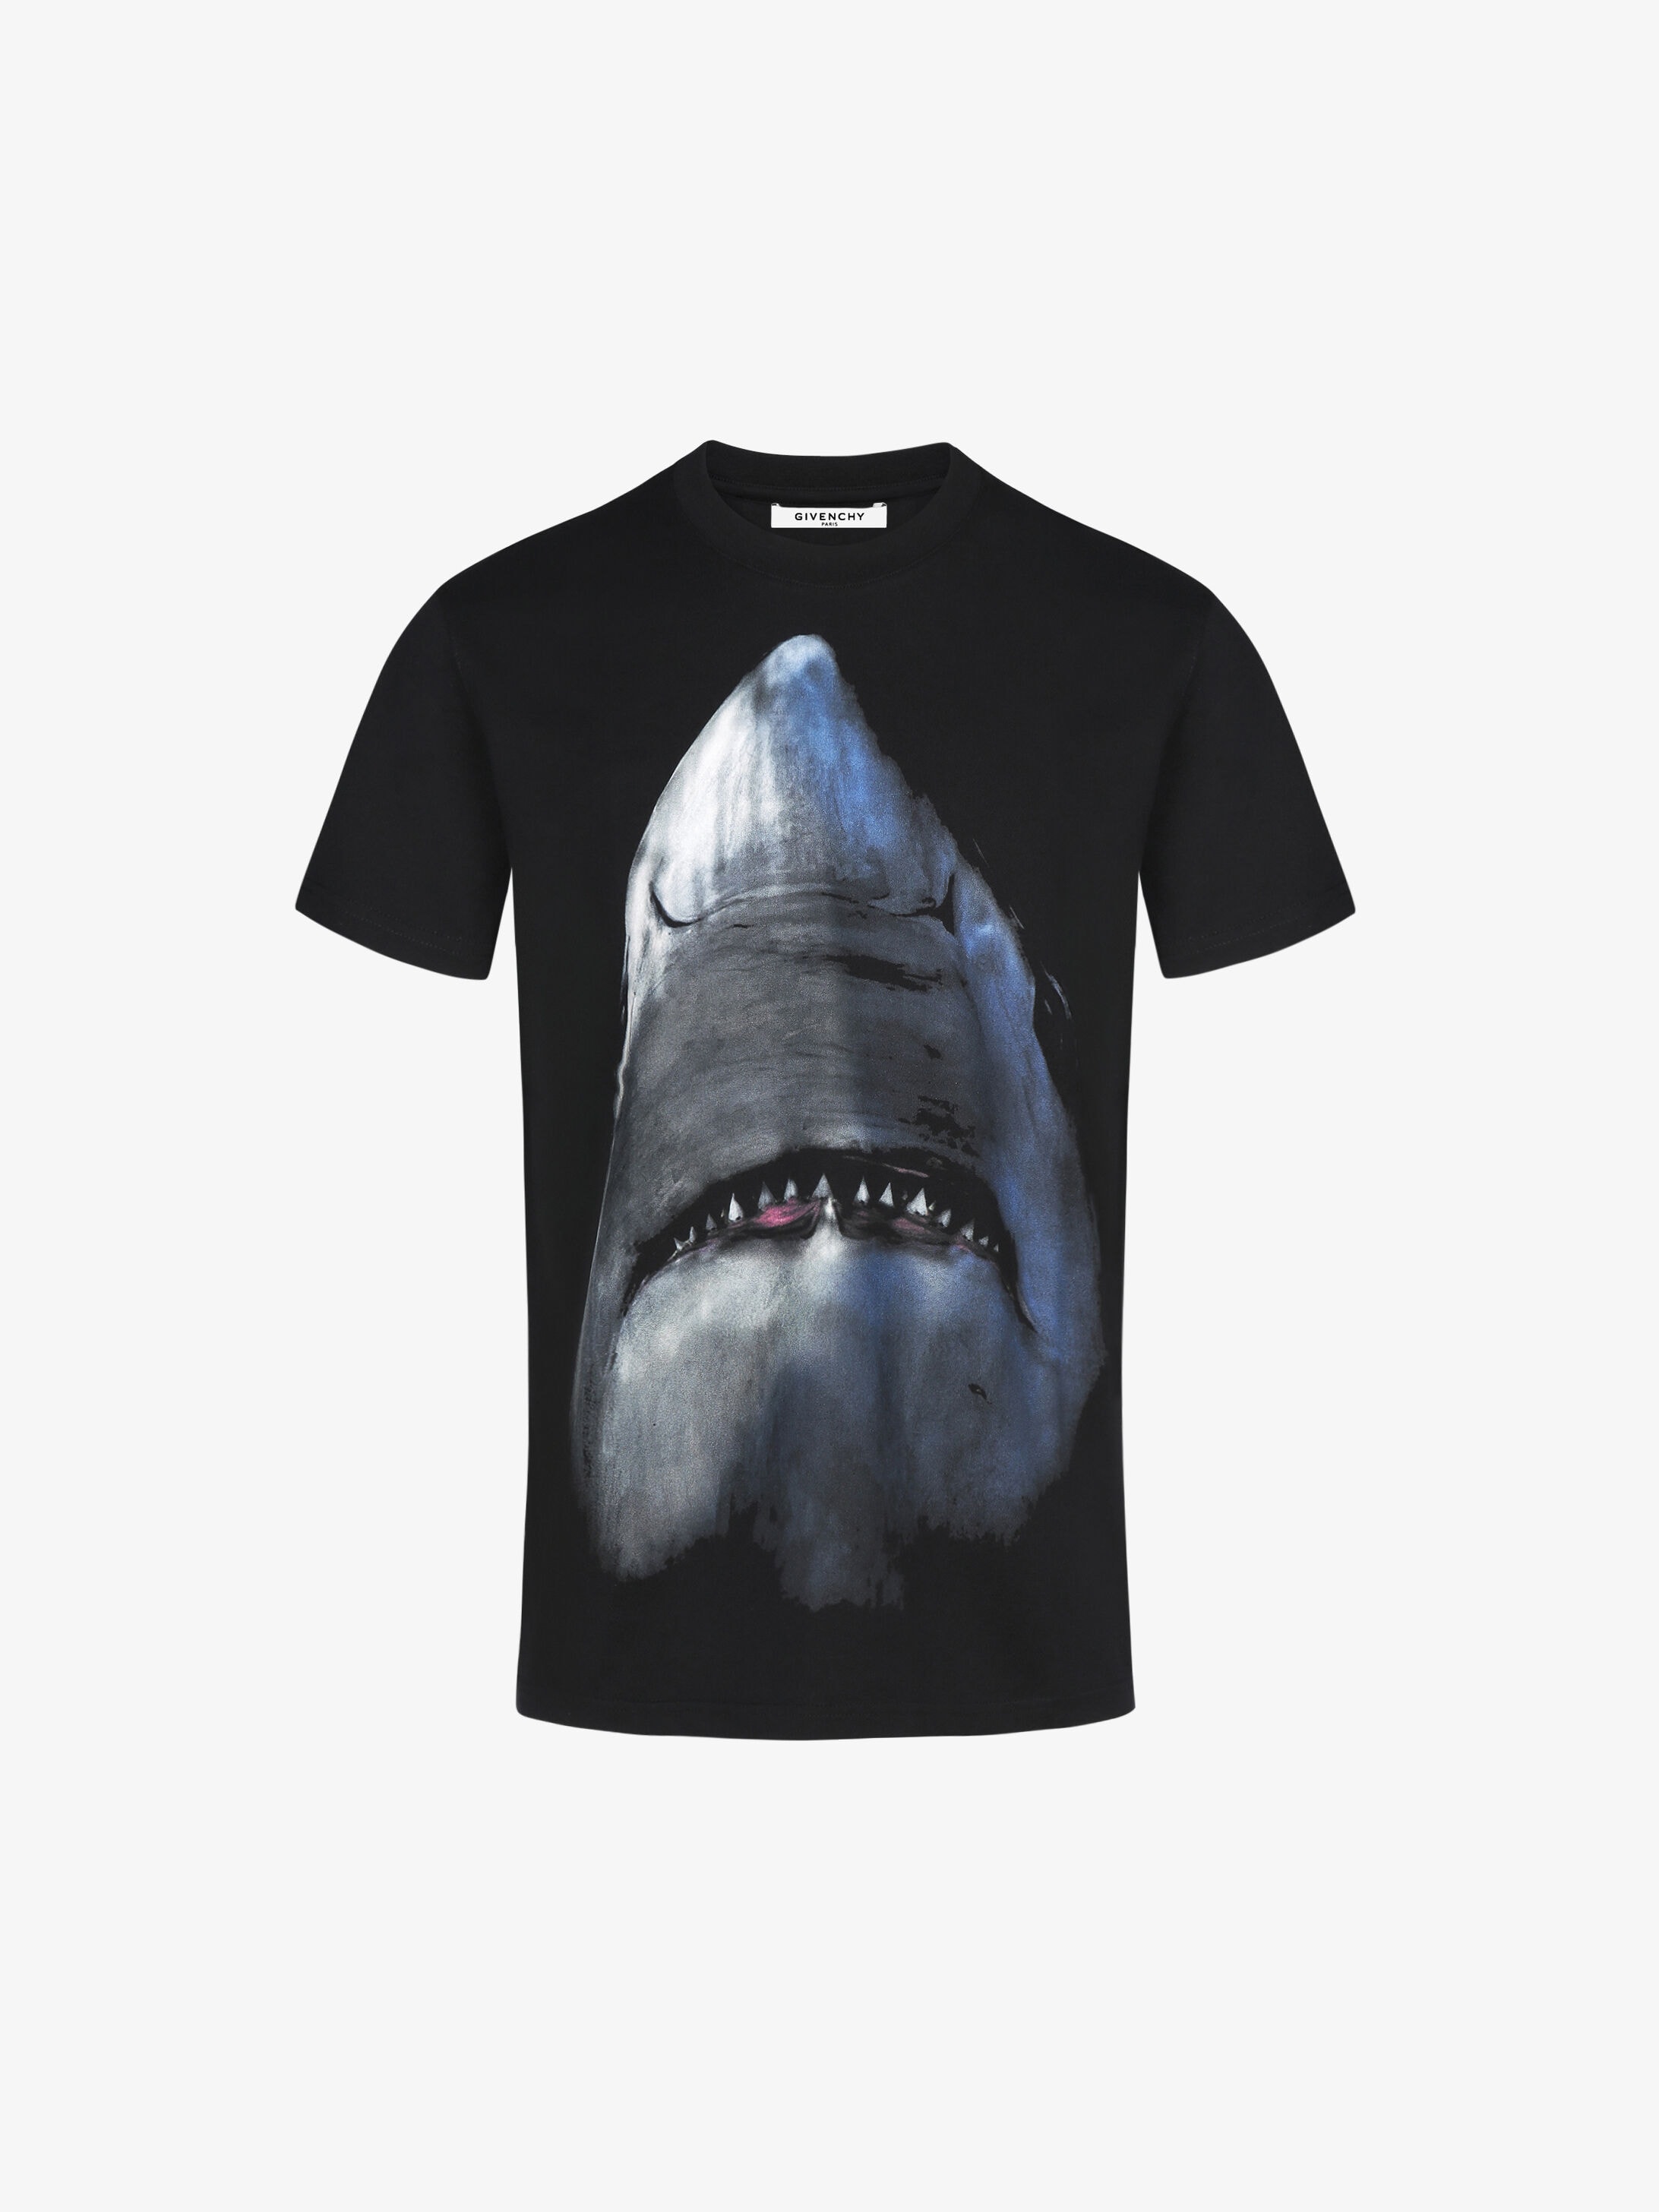 Givenchy T-shirt imprimé Shark 